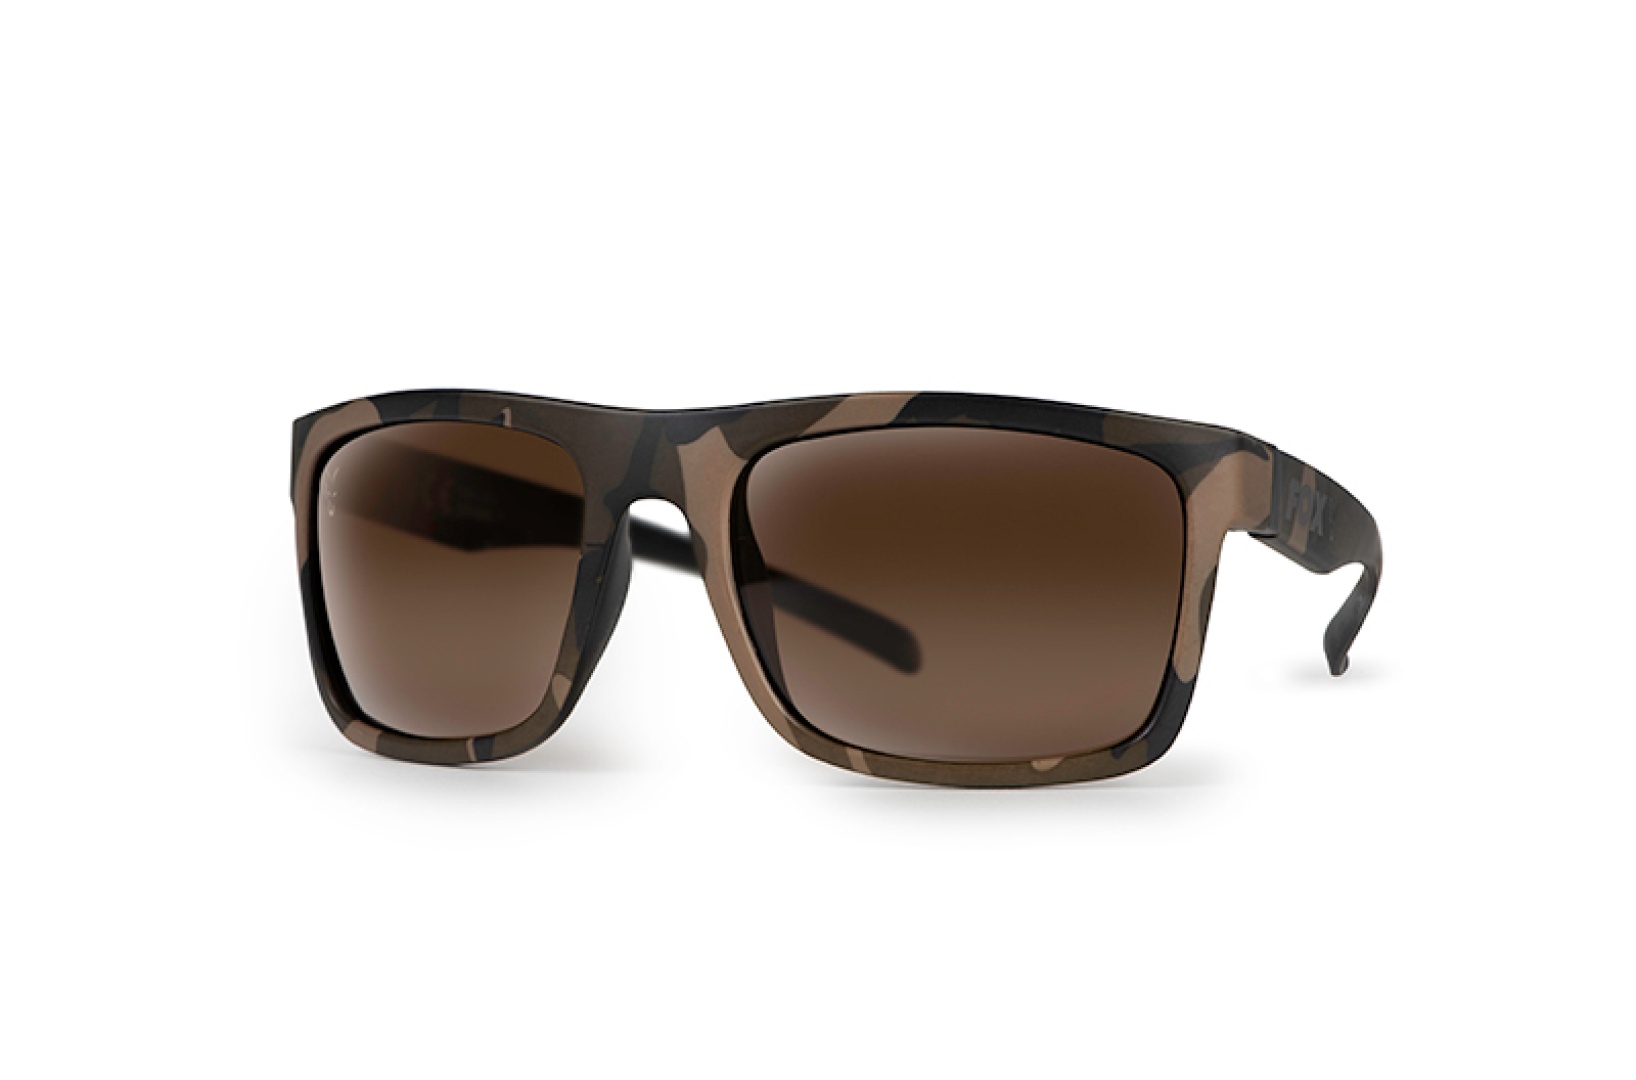 Fox Avius - Camo & Black Sunglasses - Brown Lense 